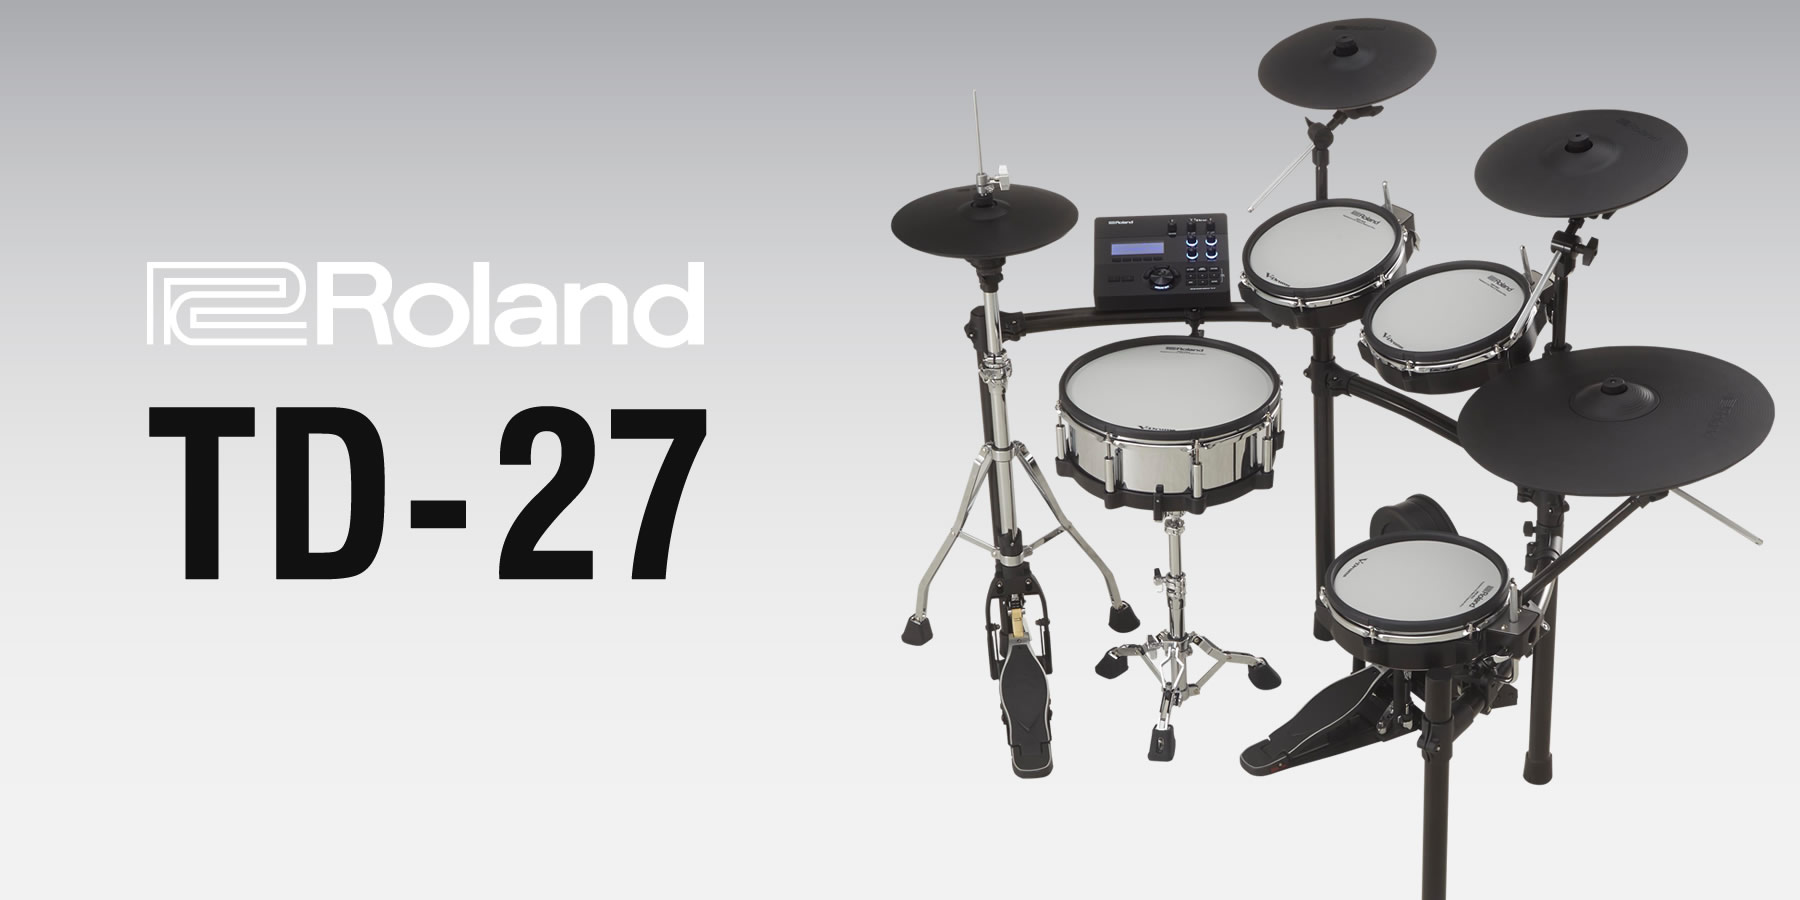 TD-27シリーズ | イケベ楽器店【Roland V-Drums】総合カタログ